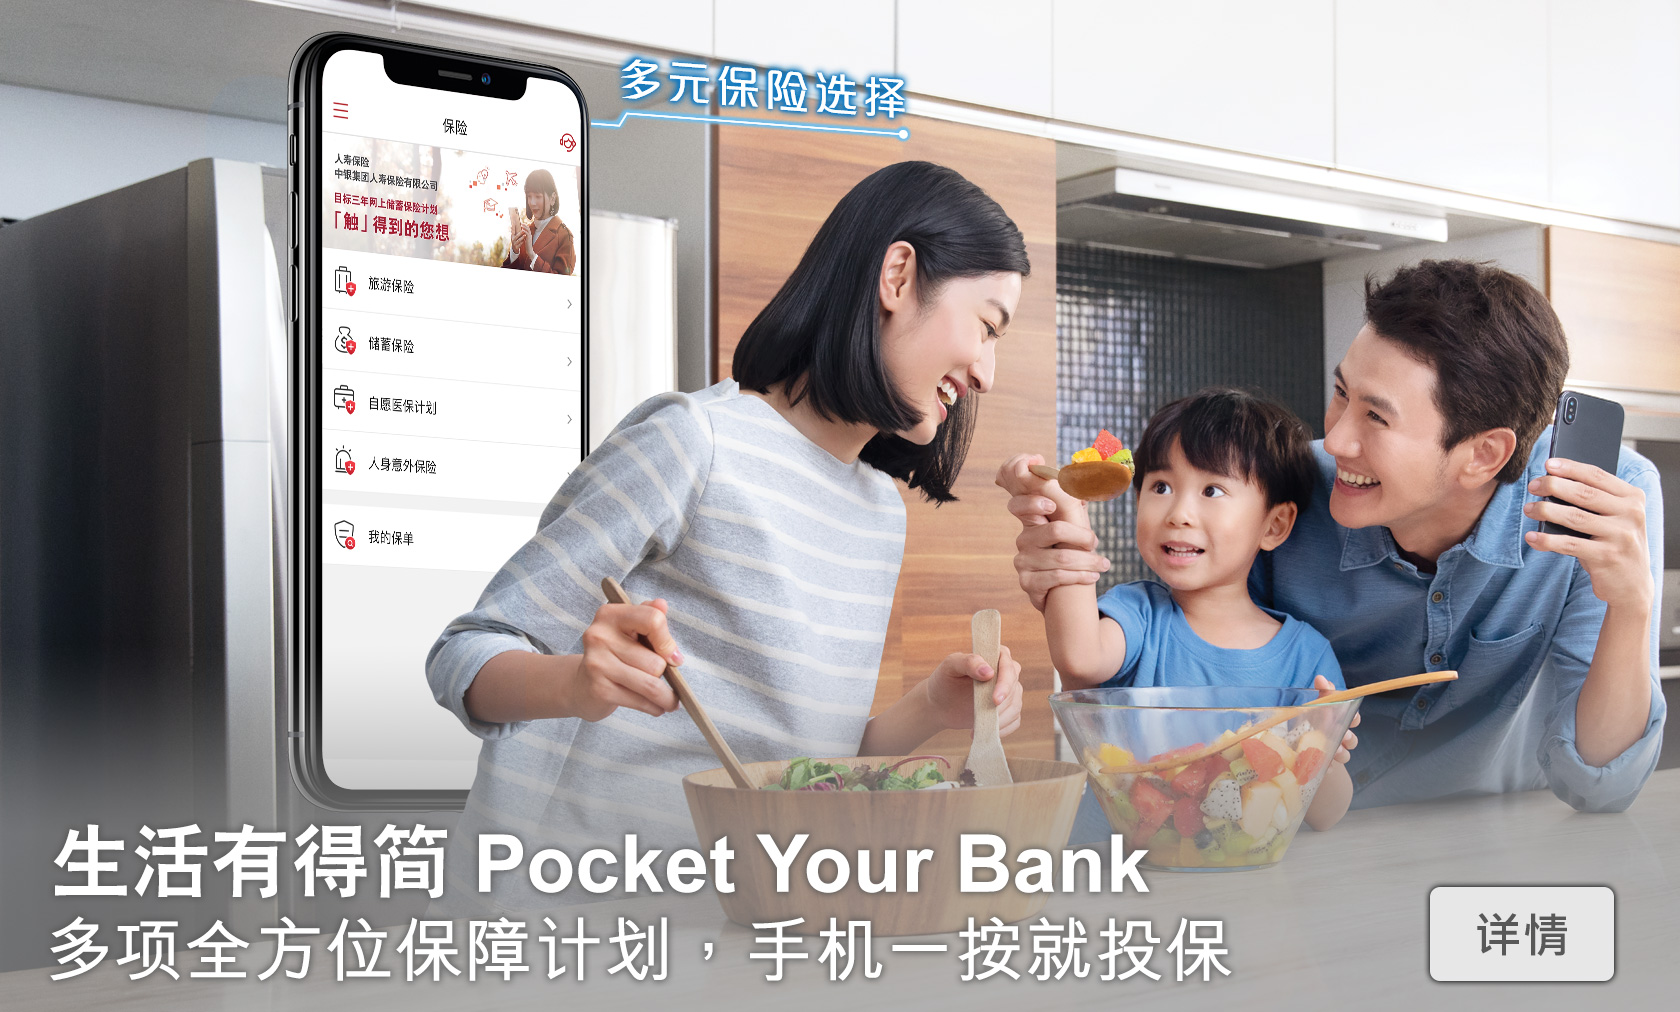 生活有得简 Pocket Your Bank
多项全方位保障计划，手机一按就投保